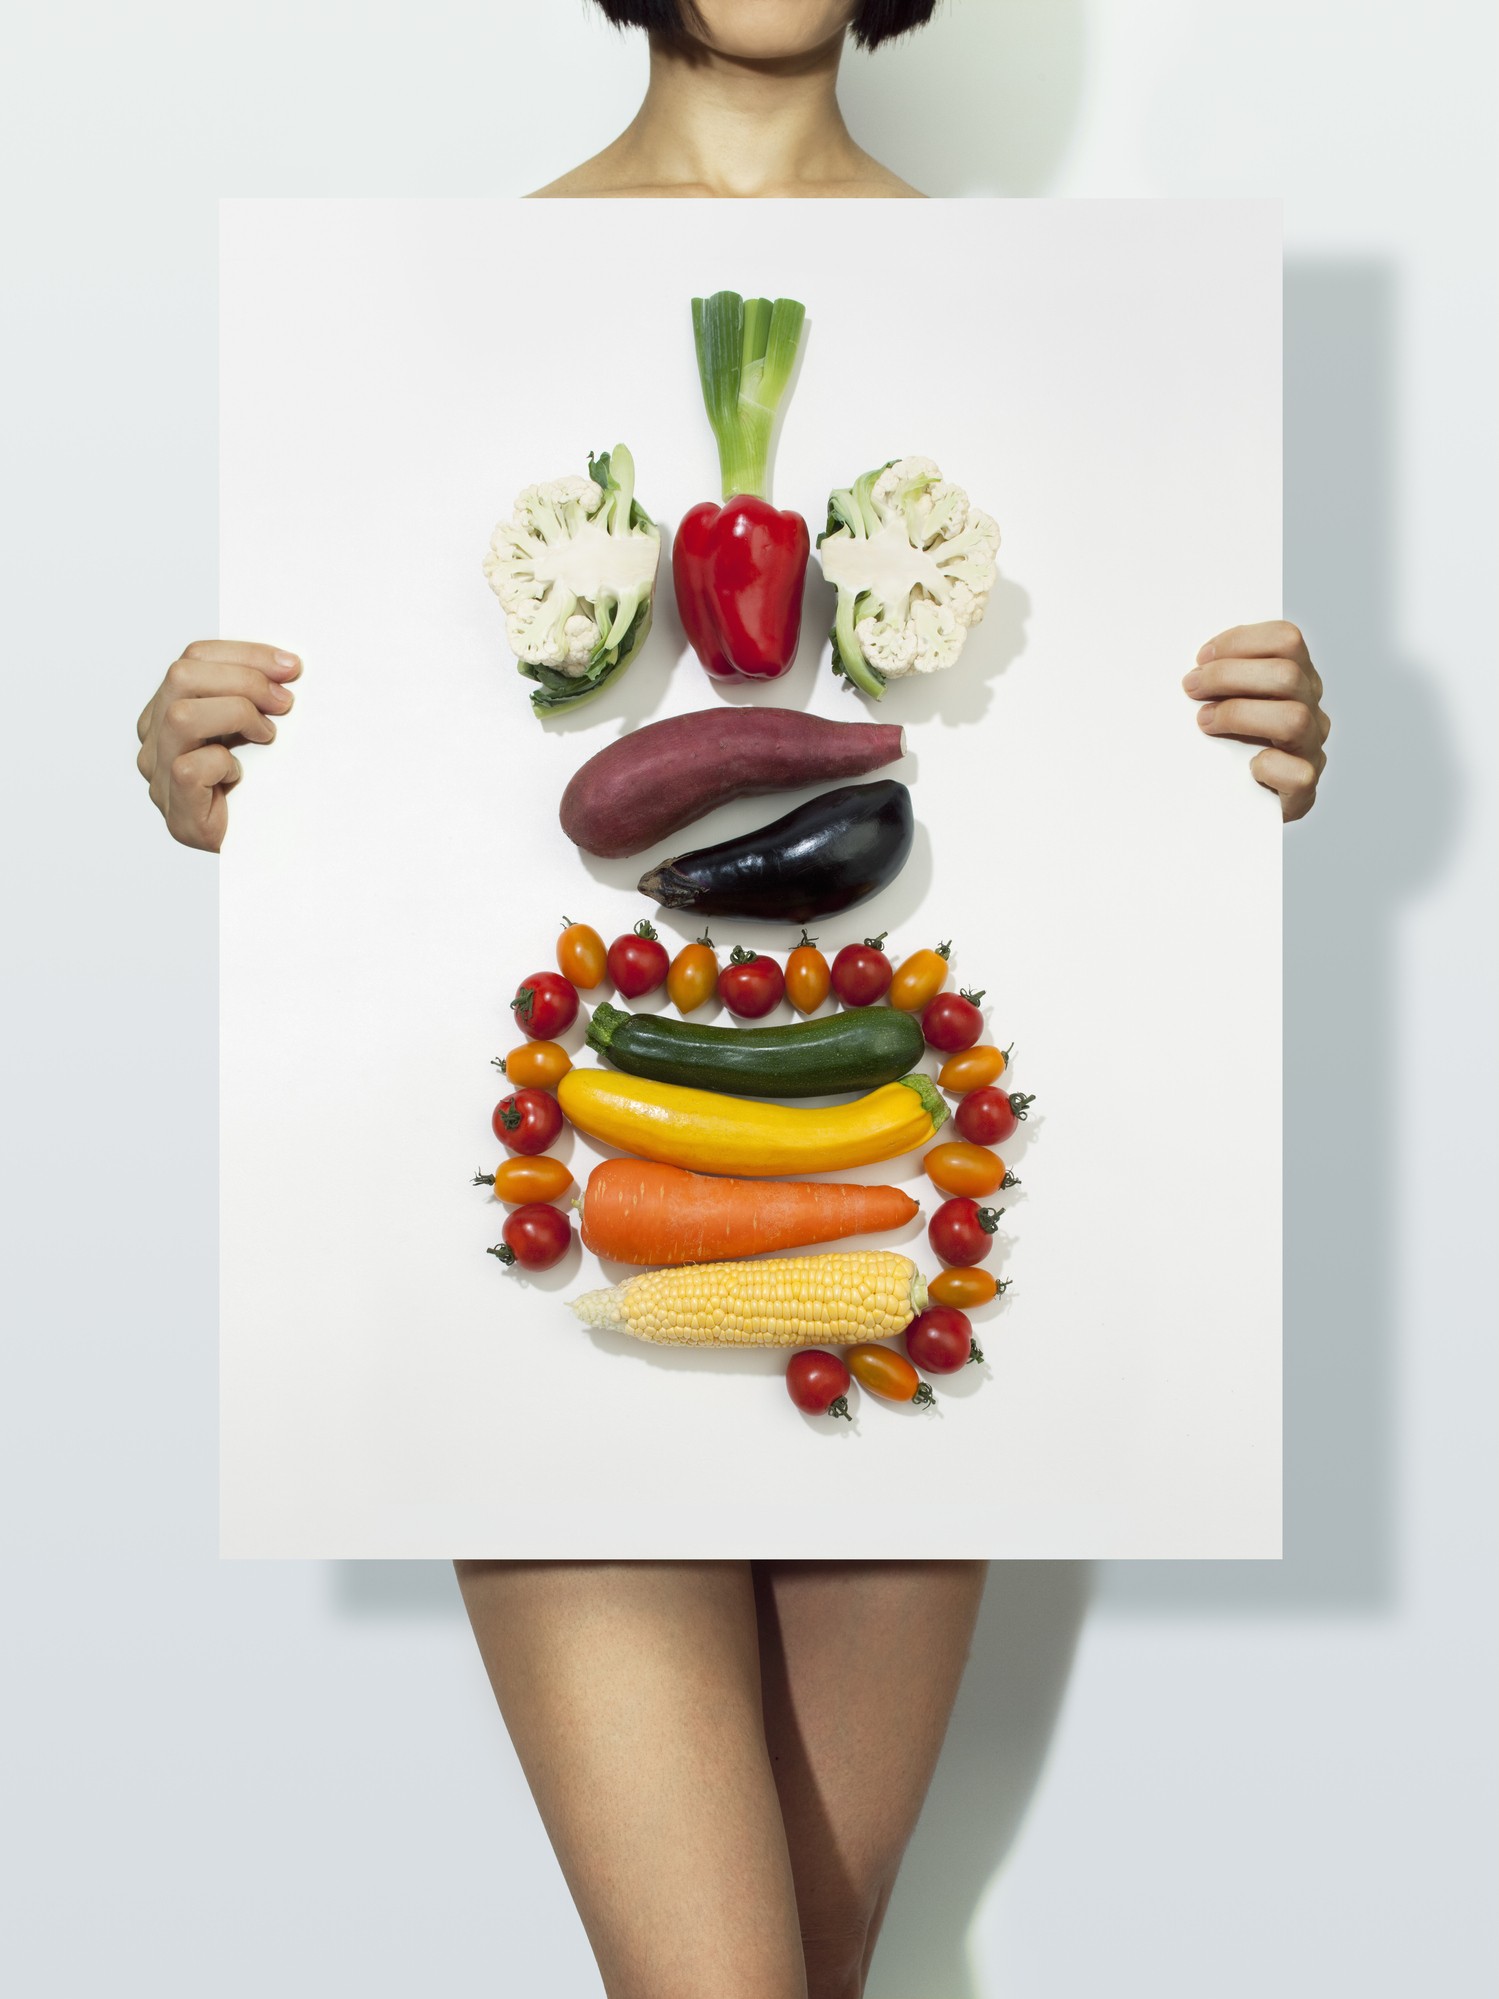 Comer legumes e verduras nas quantidades indicadas por médicos é essencial para manter a saúde plena do corpo (Foto: Hiroshi Watanabe/Getty Images)